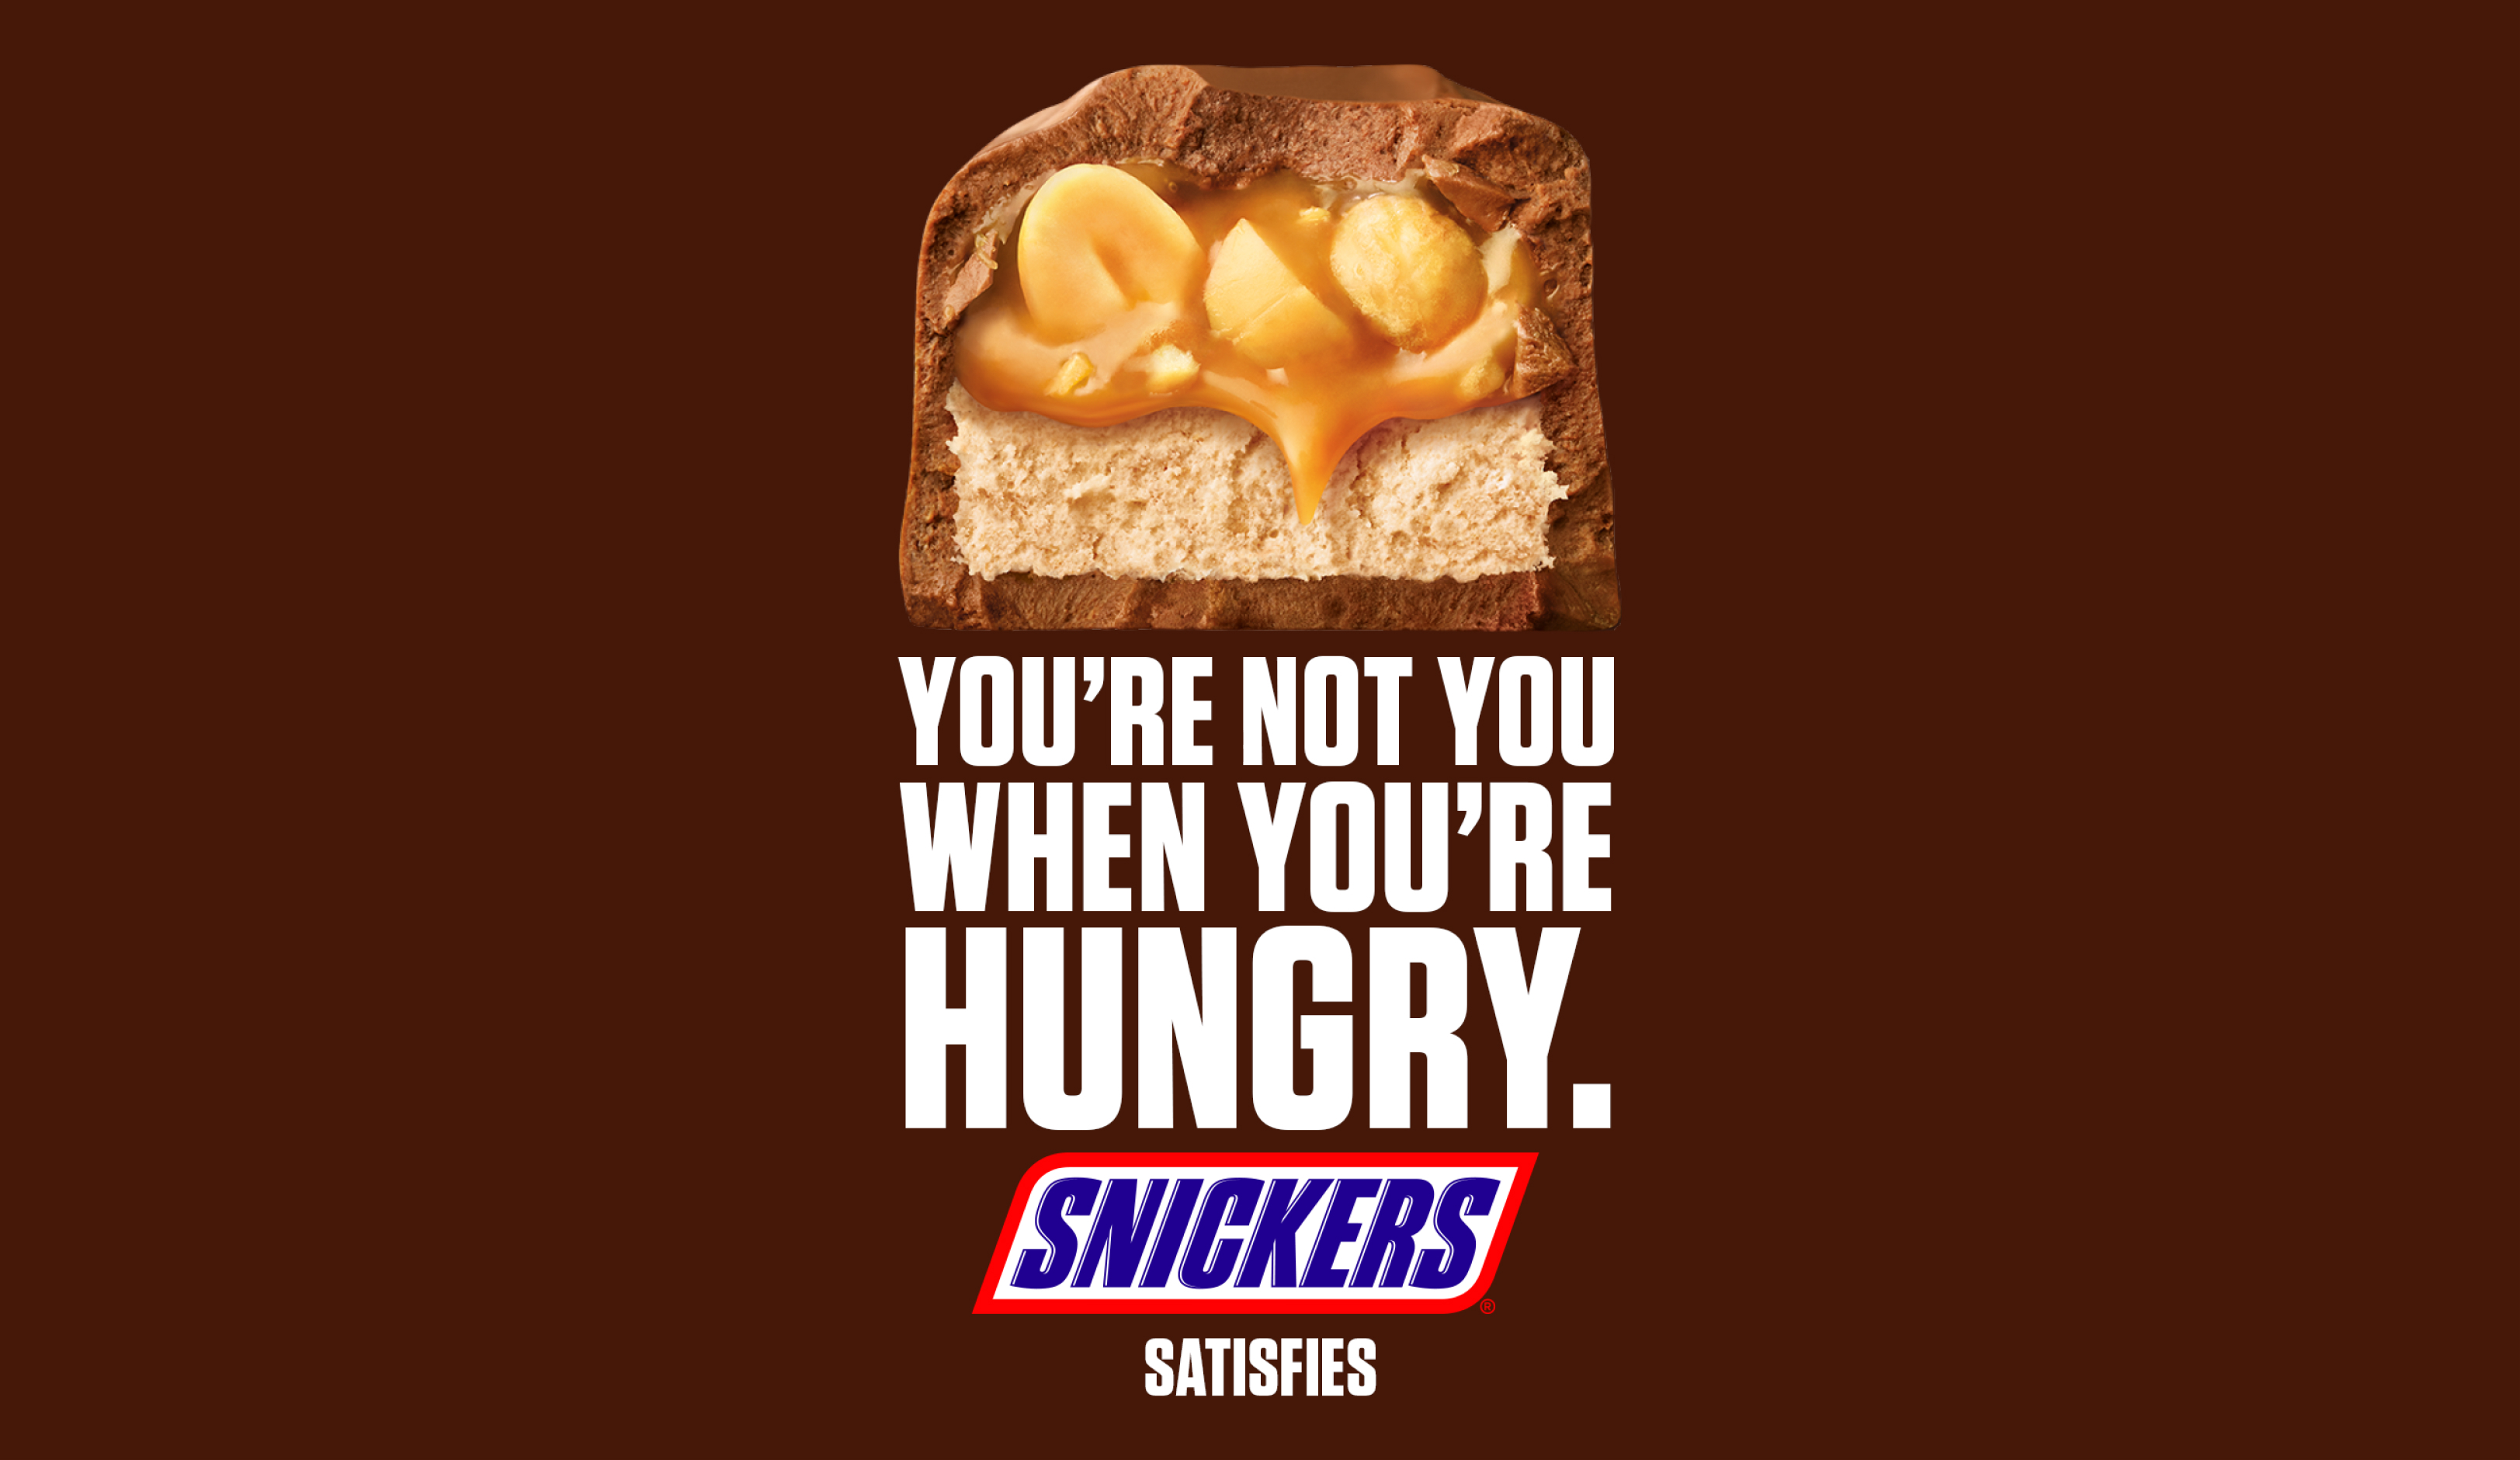 "배고플 때는 넌 네가 아니야"라는 슬로건을 알리는 스니커즈 광고